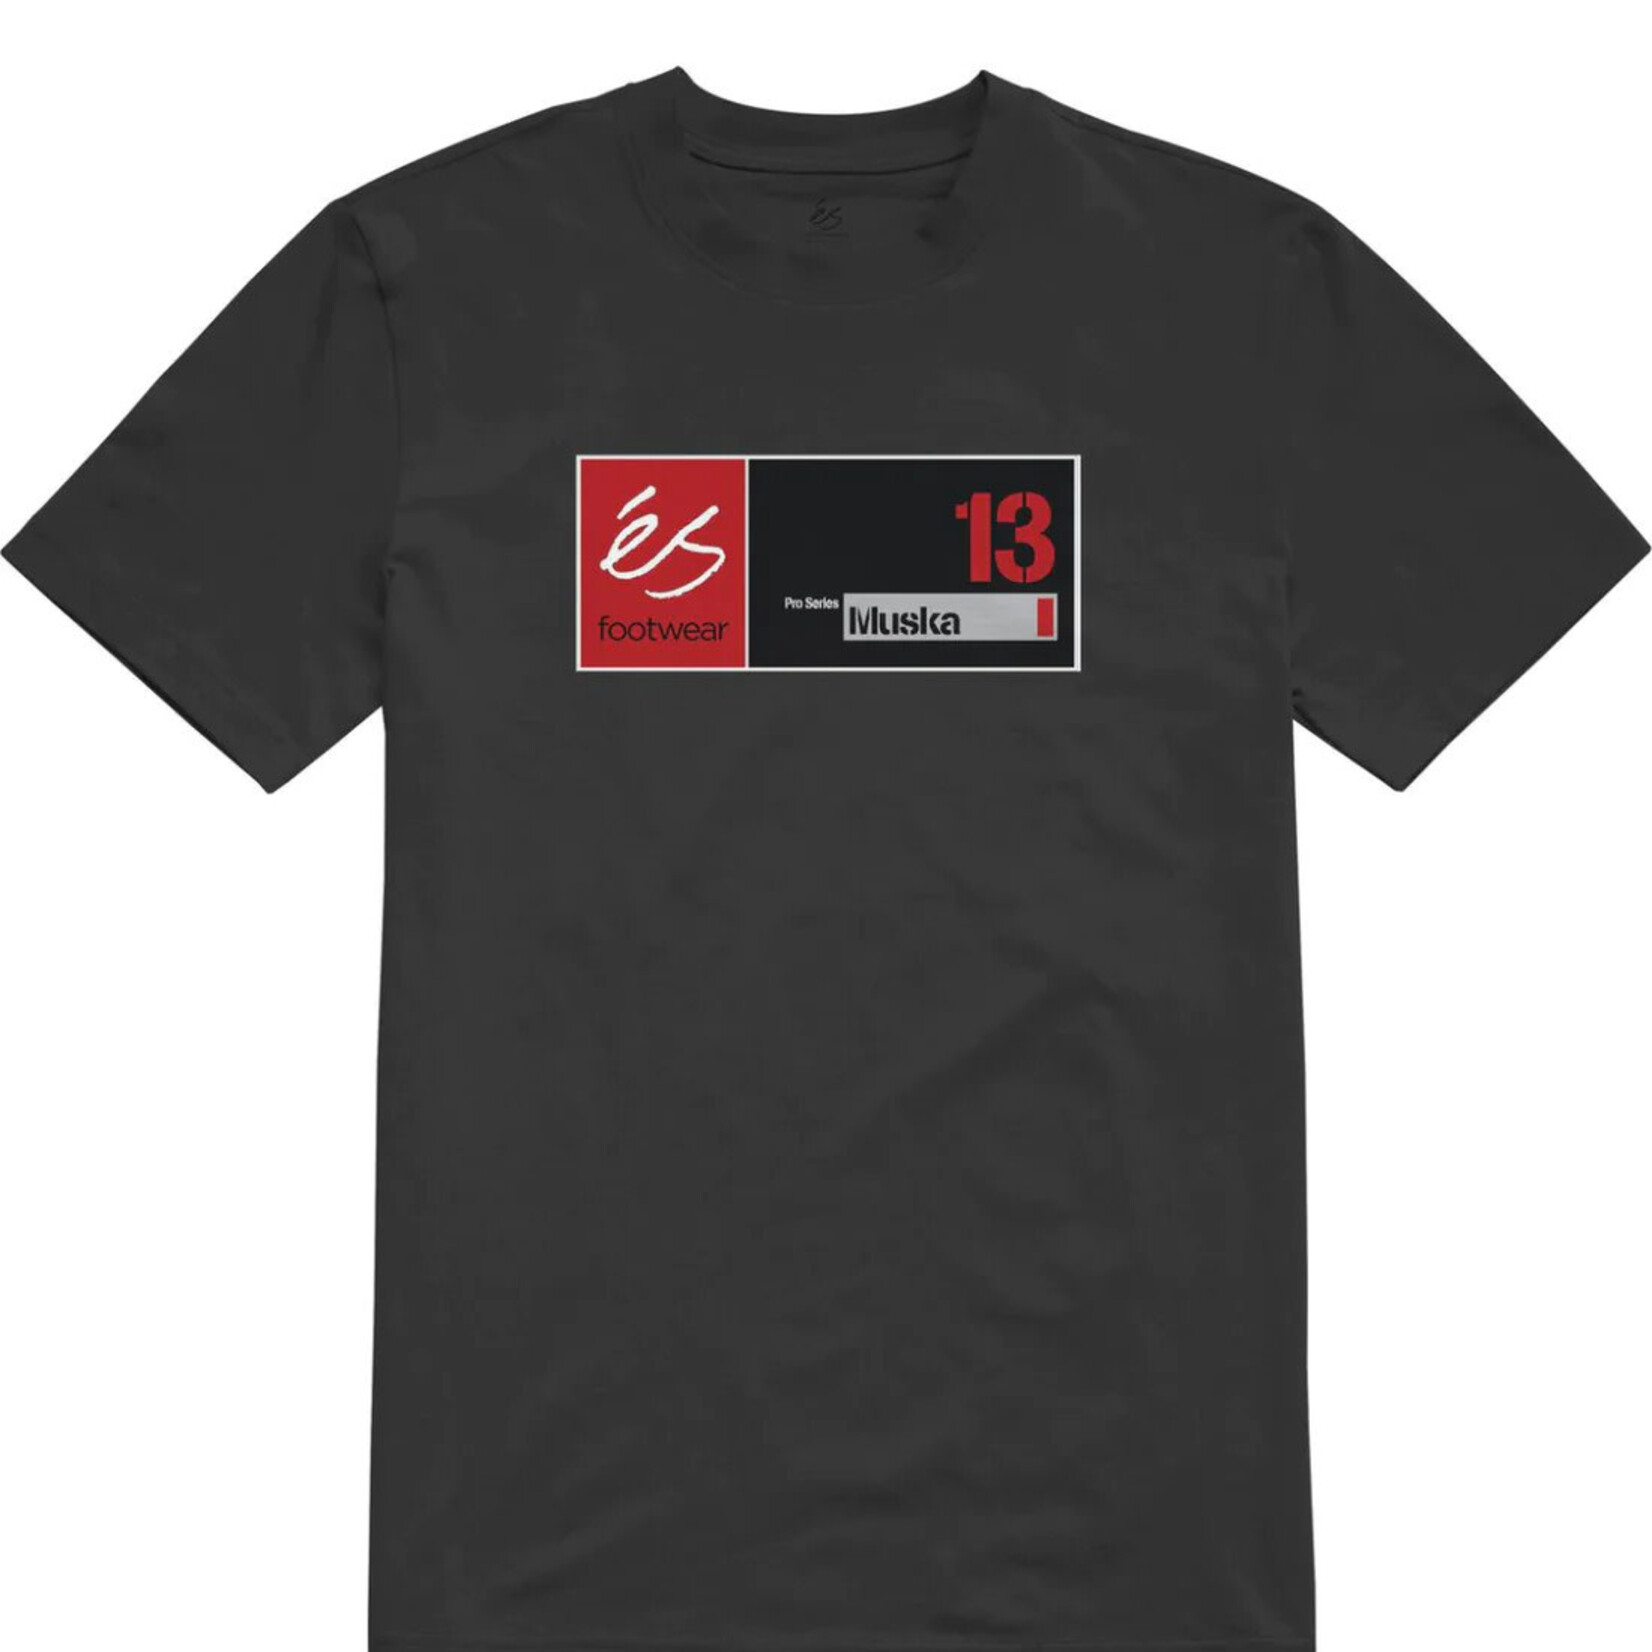 eS ES Muska 13 T-Shirt - Black